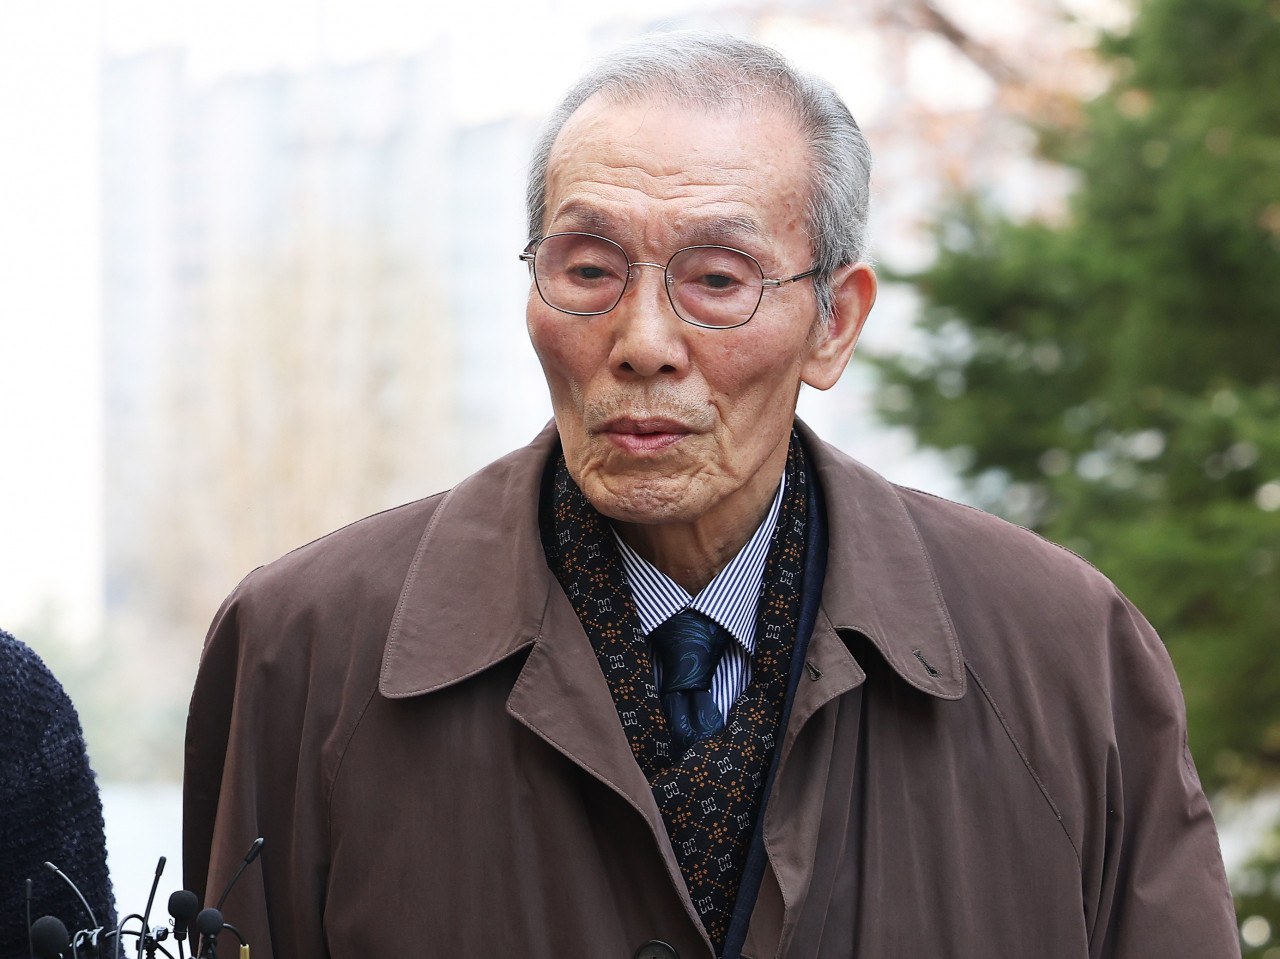 Sau khi tuyên án, ông Oh Young Soo vẫn cho biết ông sẽ tiếp tục kháng cáo, không chấp nhận bản án.